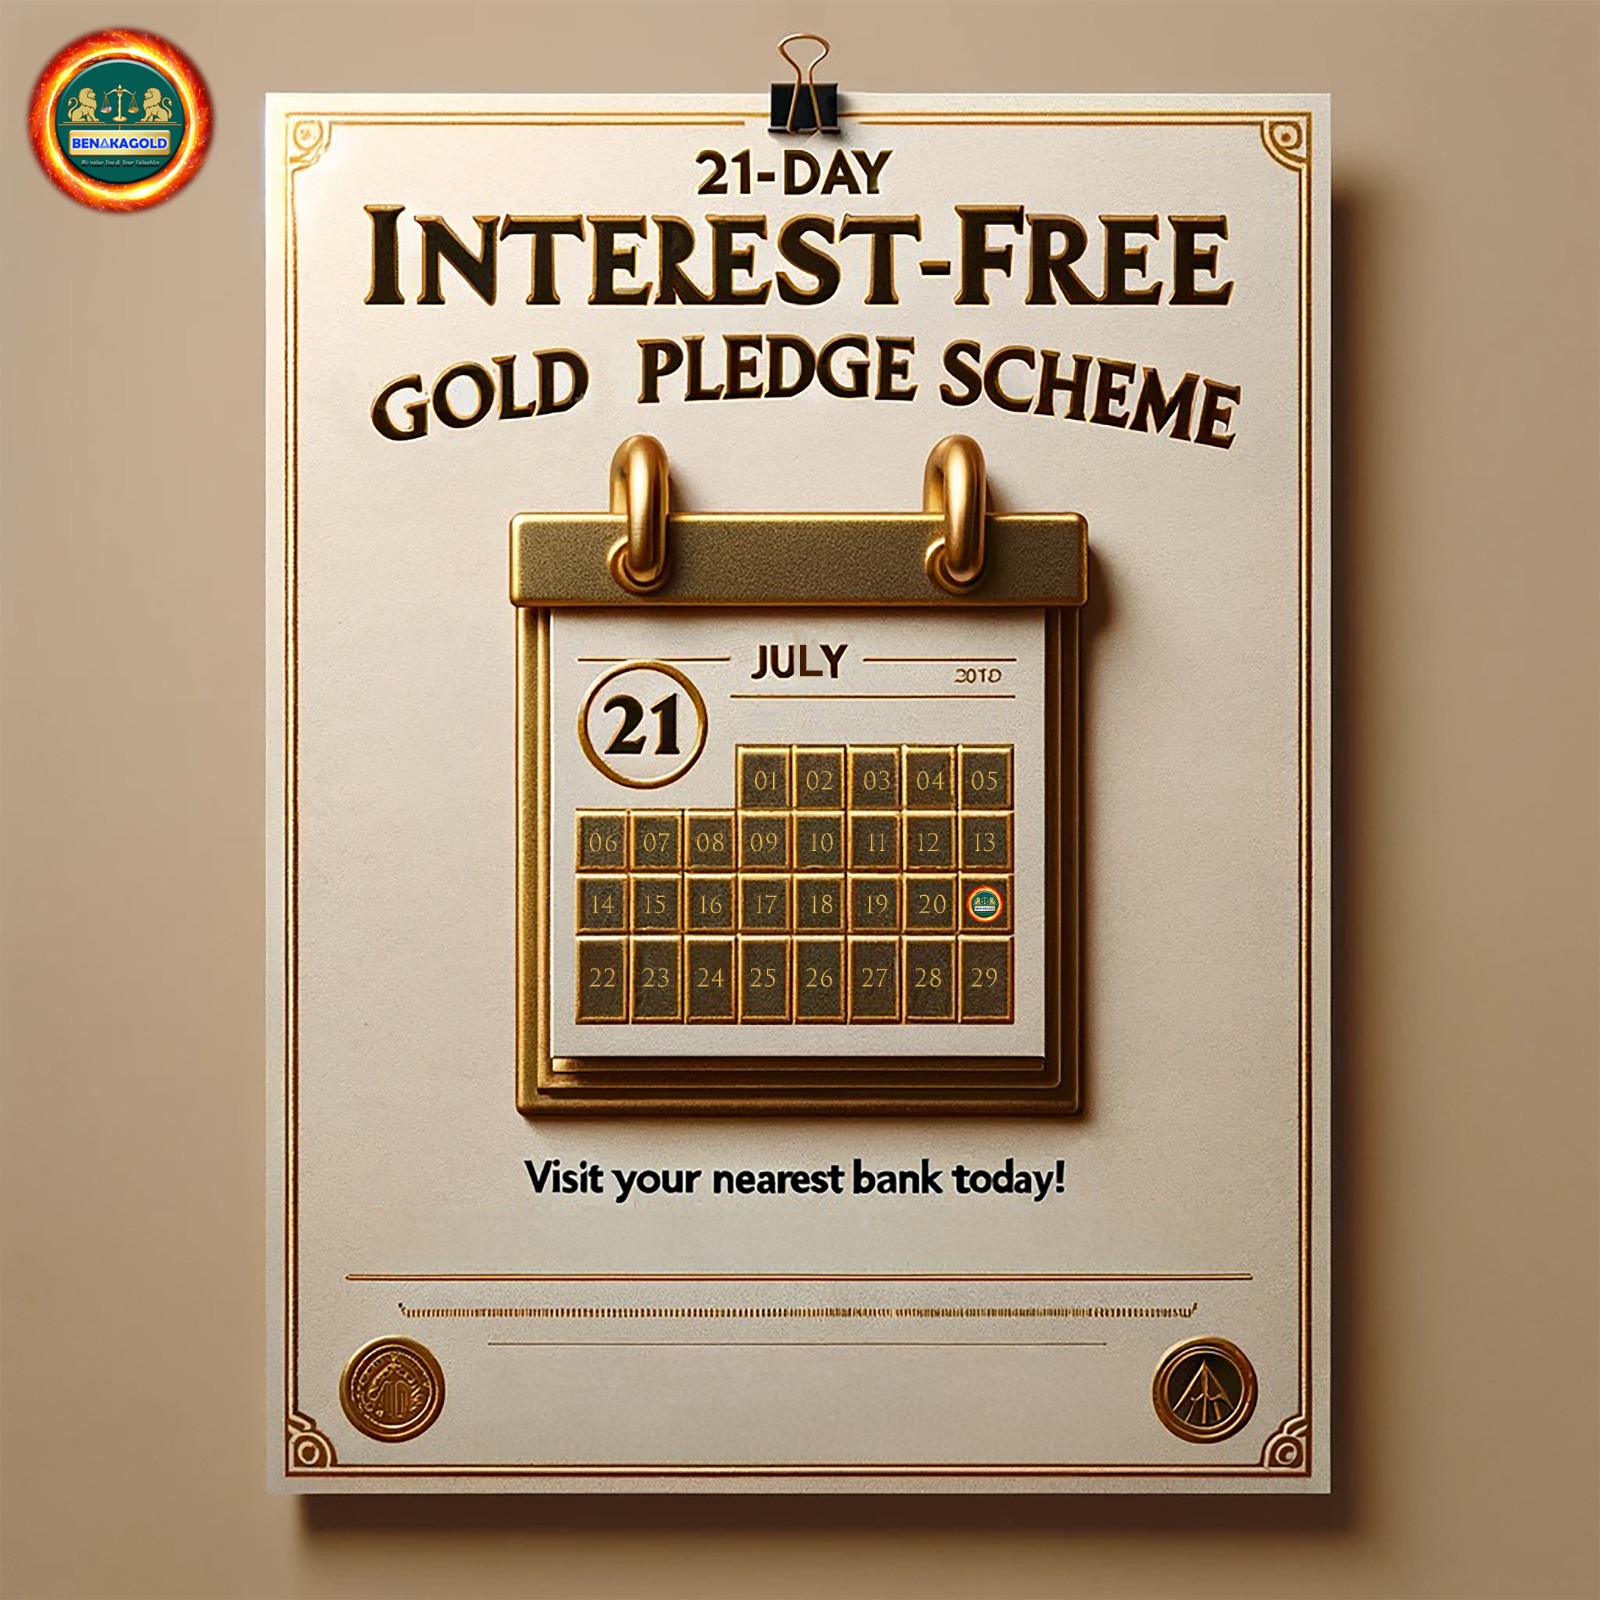 Release Pledged Gold: 21-Day Interest-Free Gold Pledge Scheme